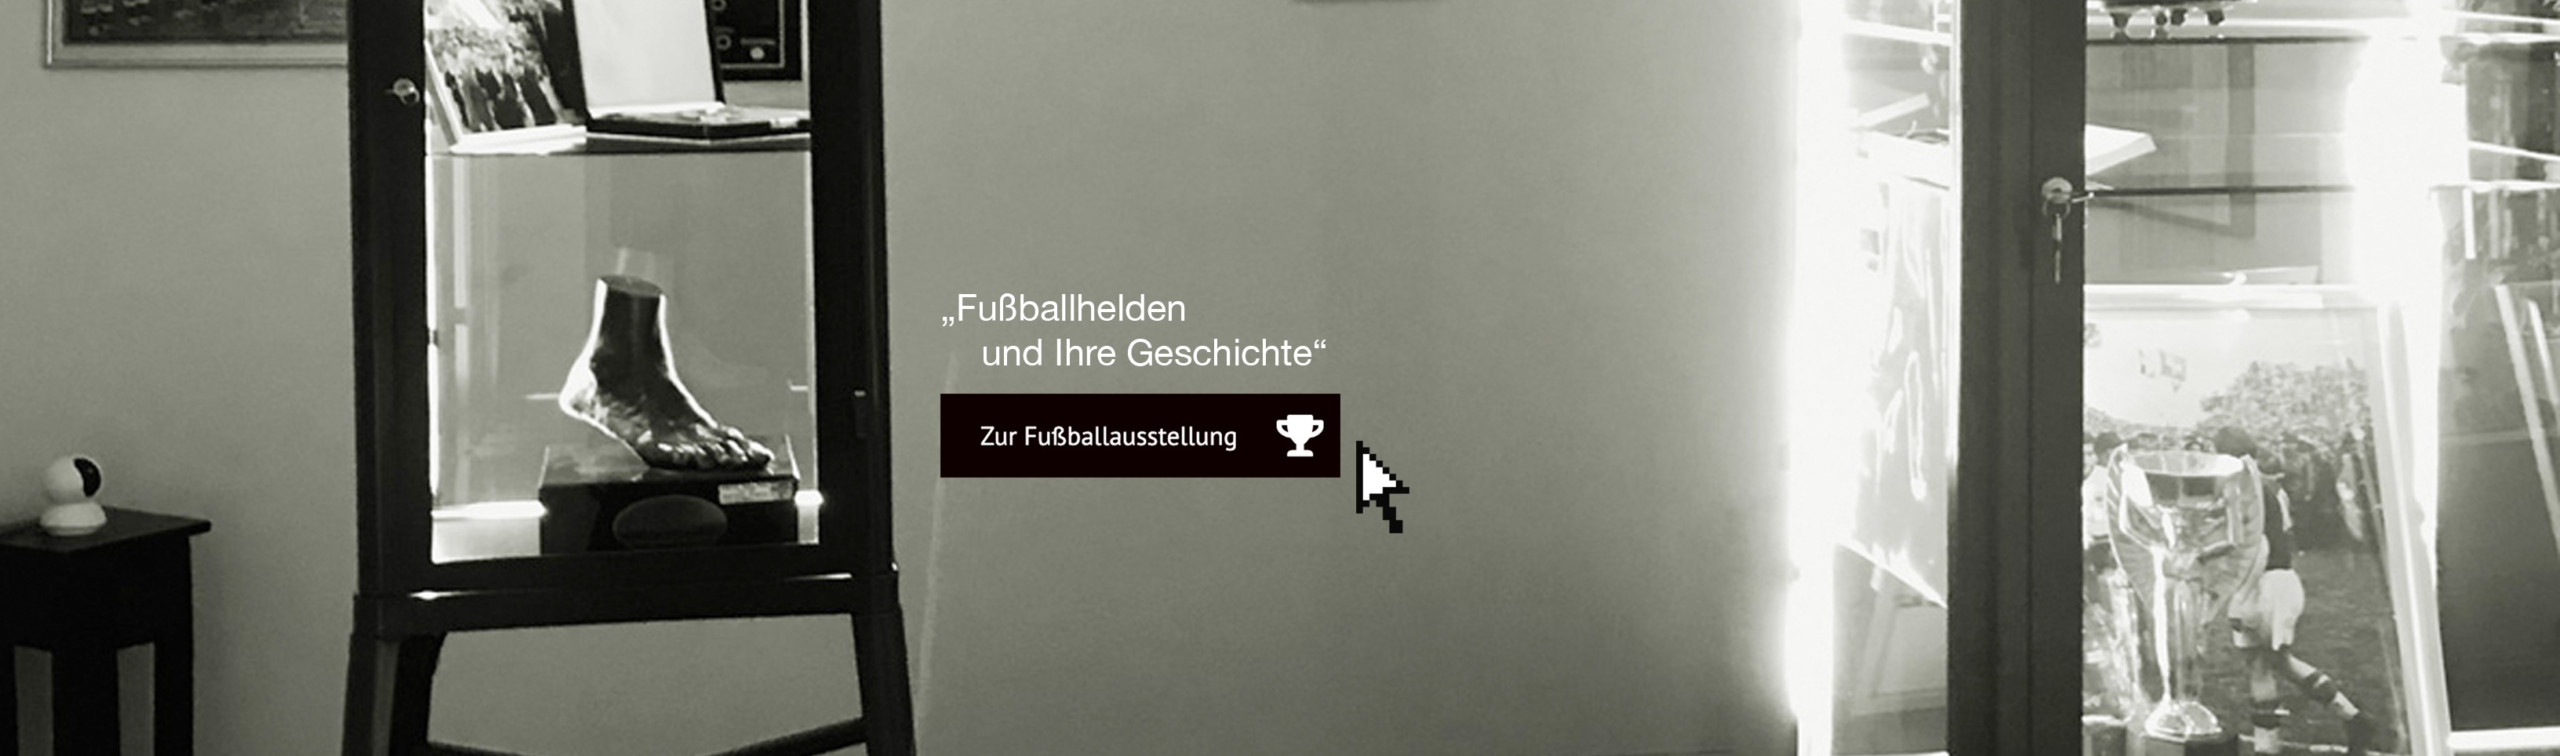 fussballmuseum_2-scaled